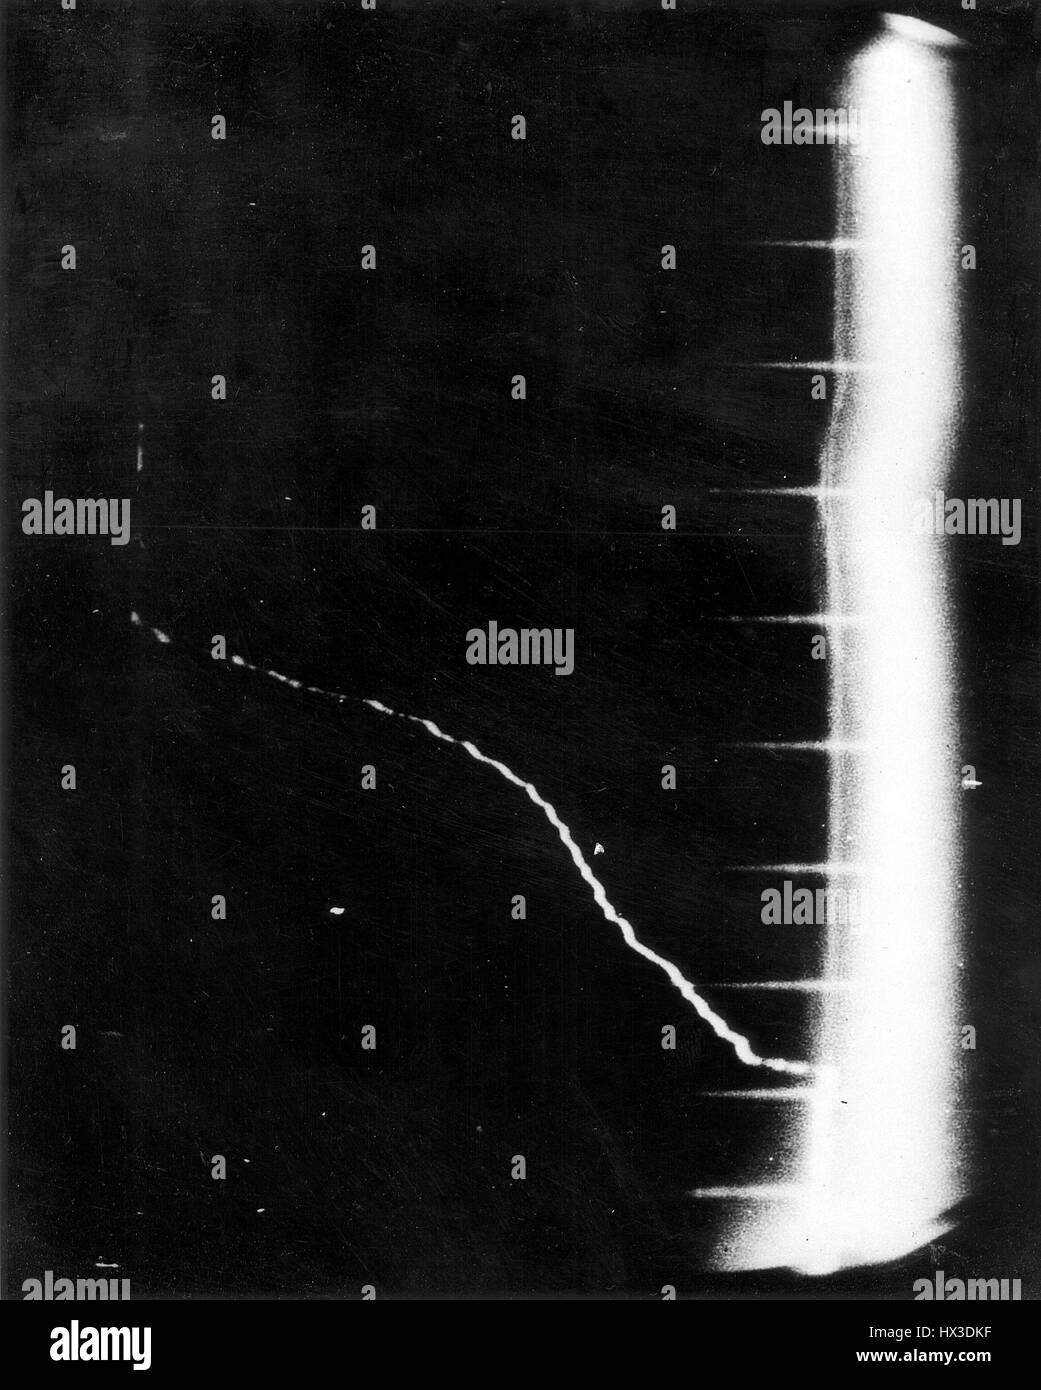 Vera fotografia di oscilloscopio registrazione schermo 1,3 miliardi di volt l'energia ottenuta dalla Cosmotron presso il Brookhaven National Laboratory di Upton, New York, 20 maggio 1952. Immagine cortesia del Dipartimento Americano di Energia. Foto Stock